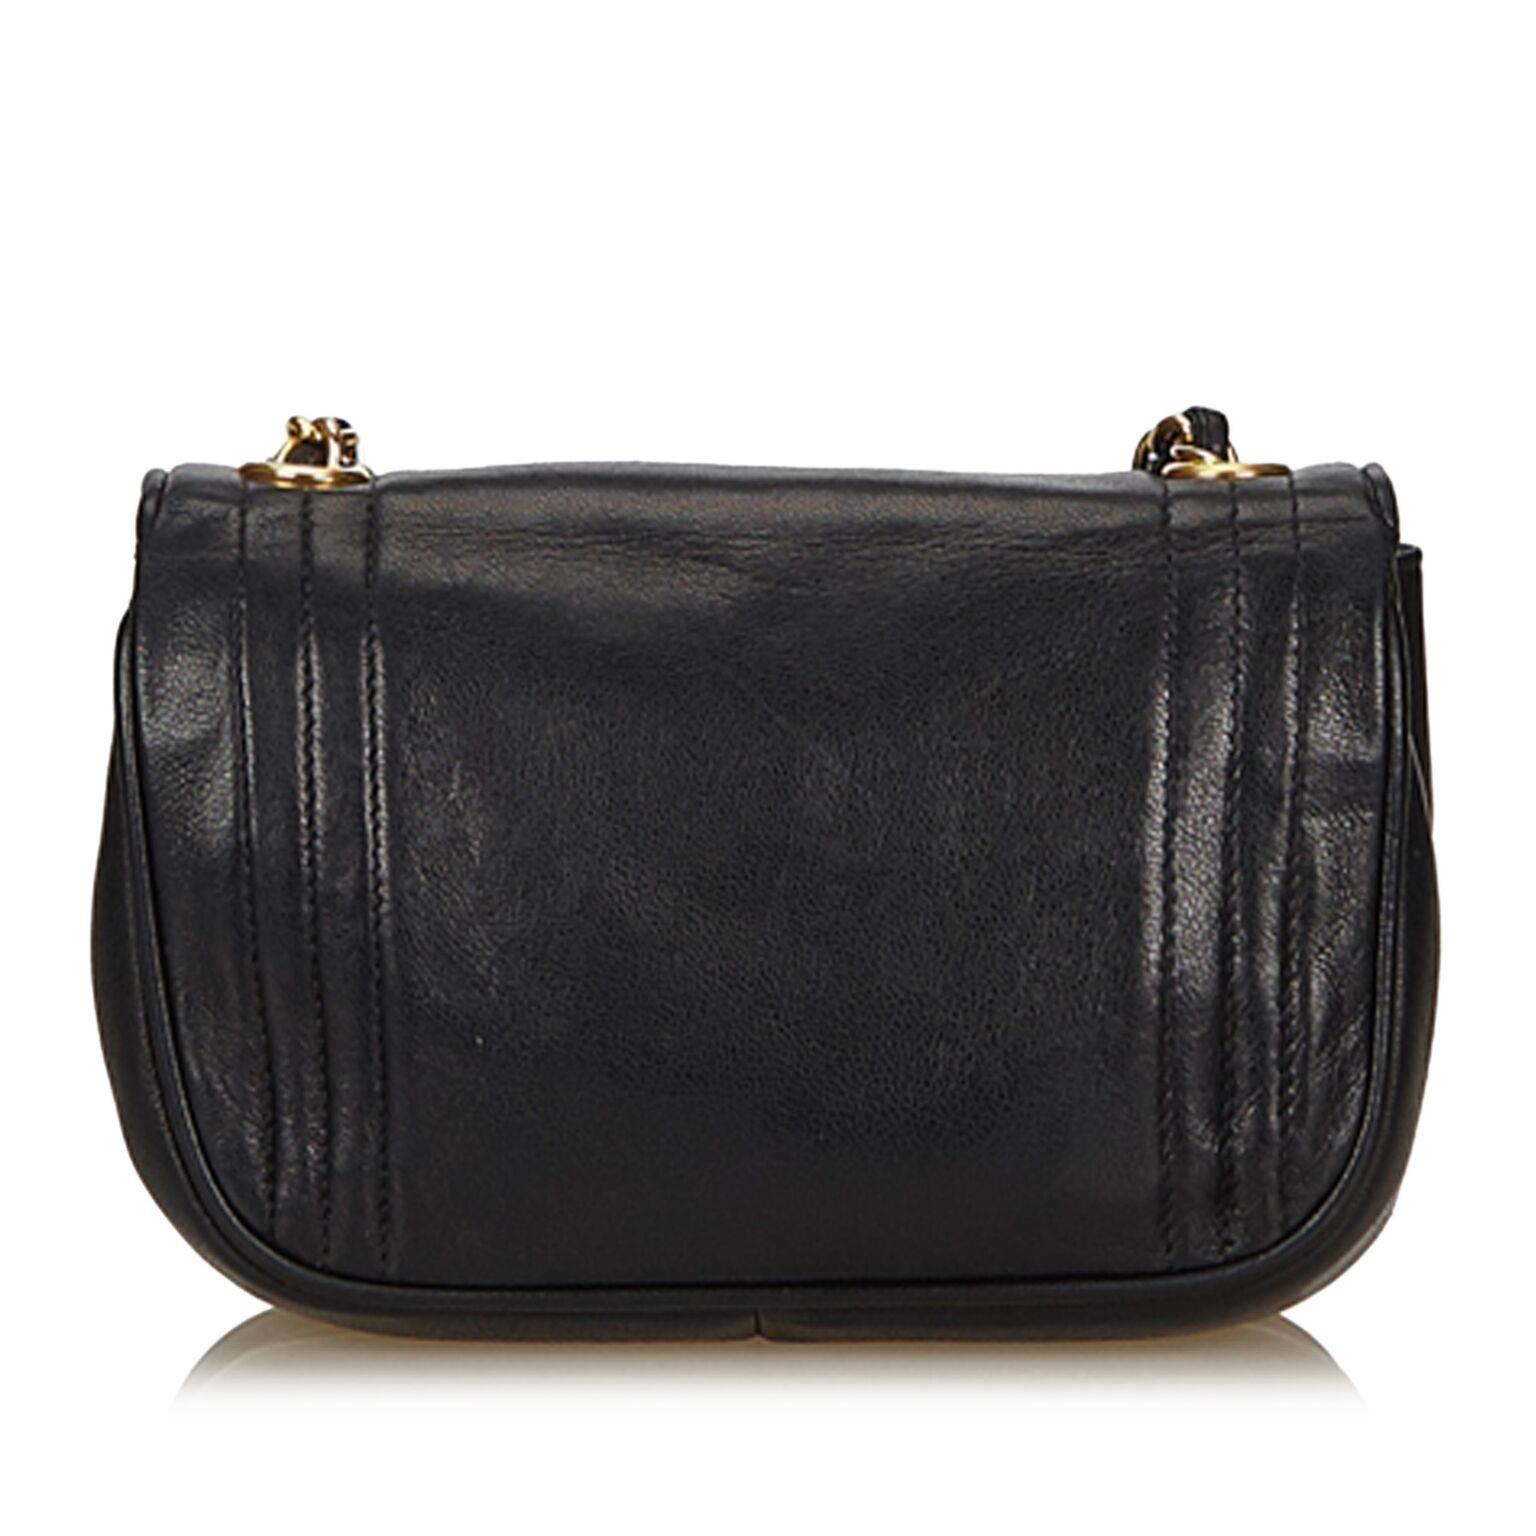 Women's Black Chanel Lambskin Leather Flap Bag